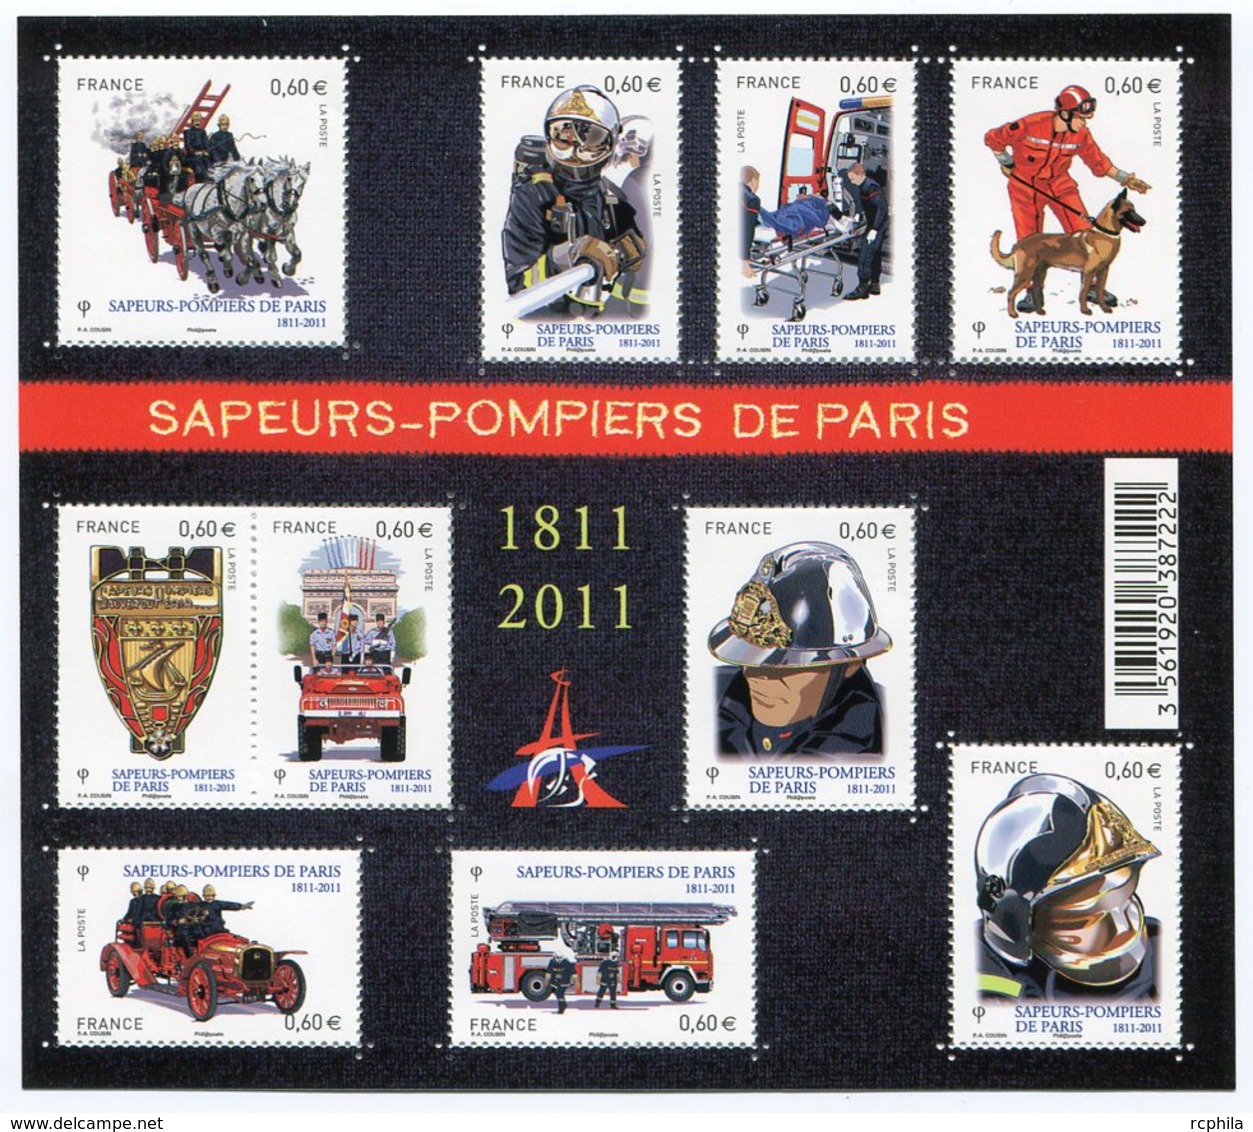 RC 12092 FRANCE BF N° F4582 SAPEURS POMPIERS DE PARIS BLOC FEUILLET NEUF ** A LA FACIALE - Neufs